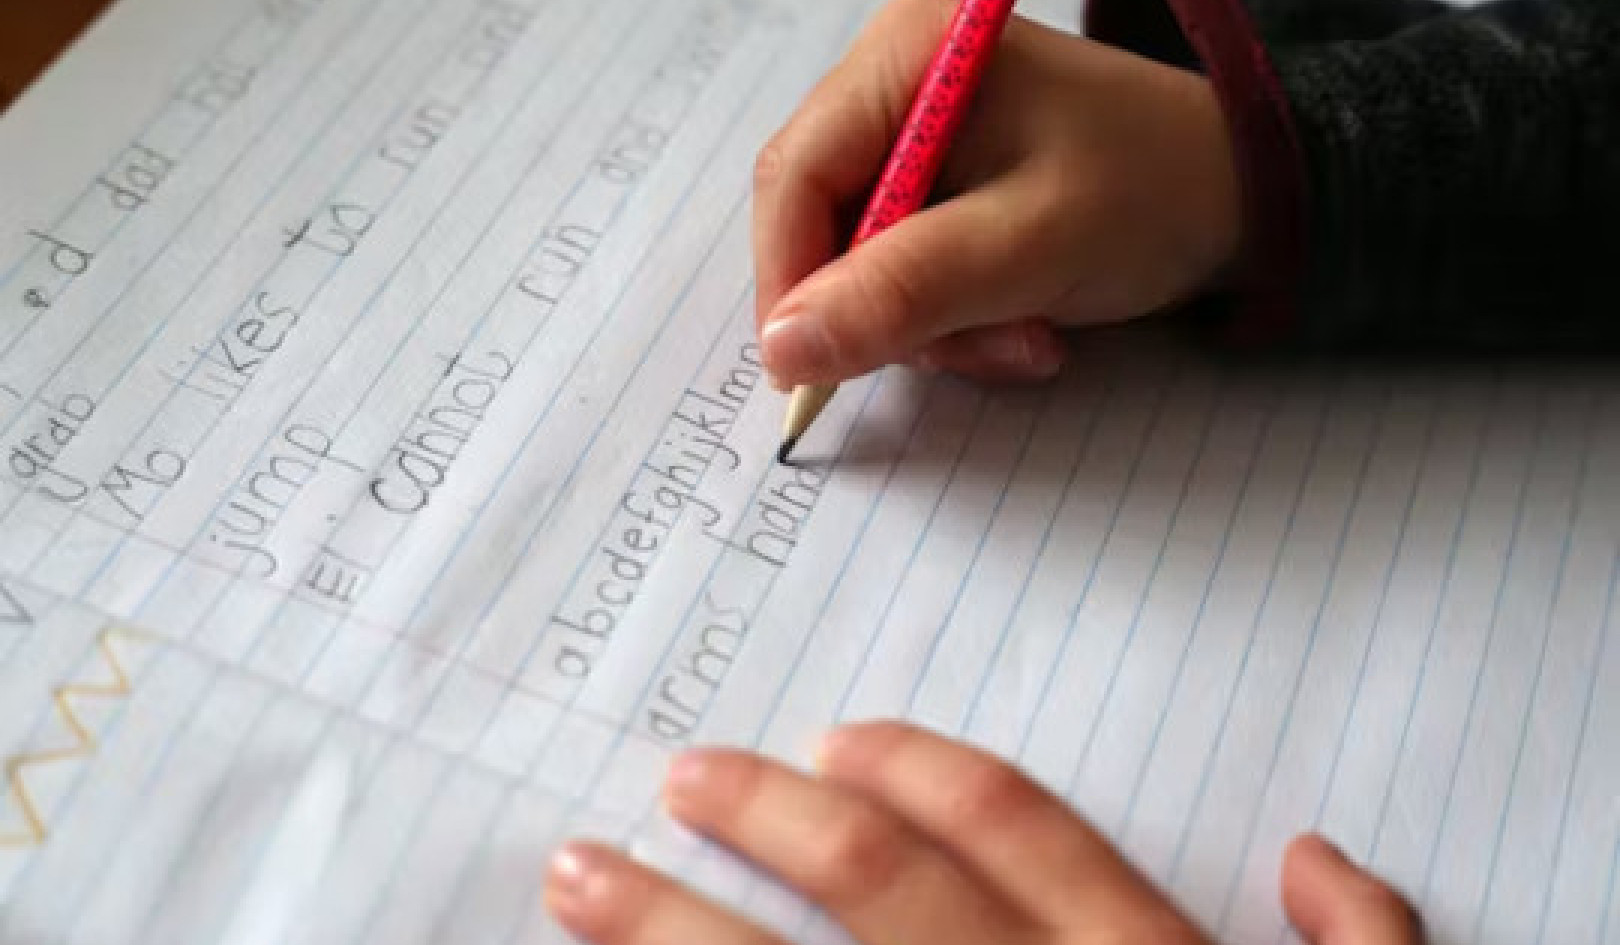 اهمیت دست خط: 5 دلیلی که بچه ها هنوز به یادگیری دست خط نیاز دارند